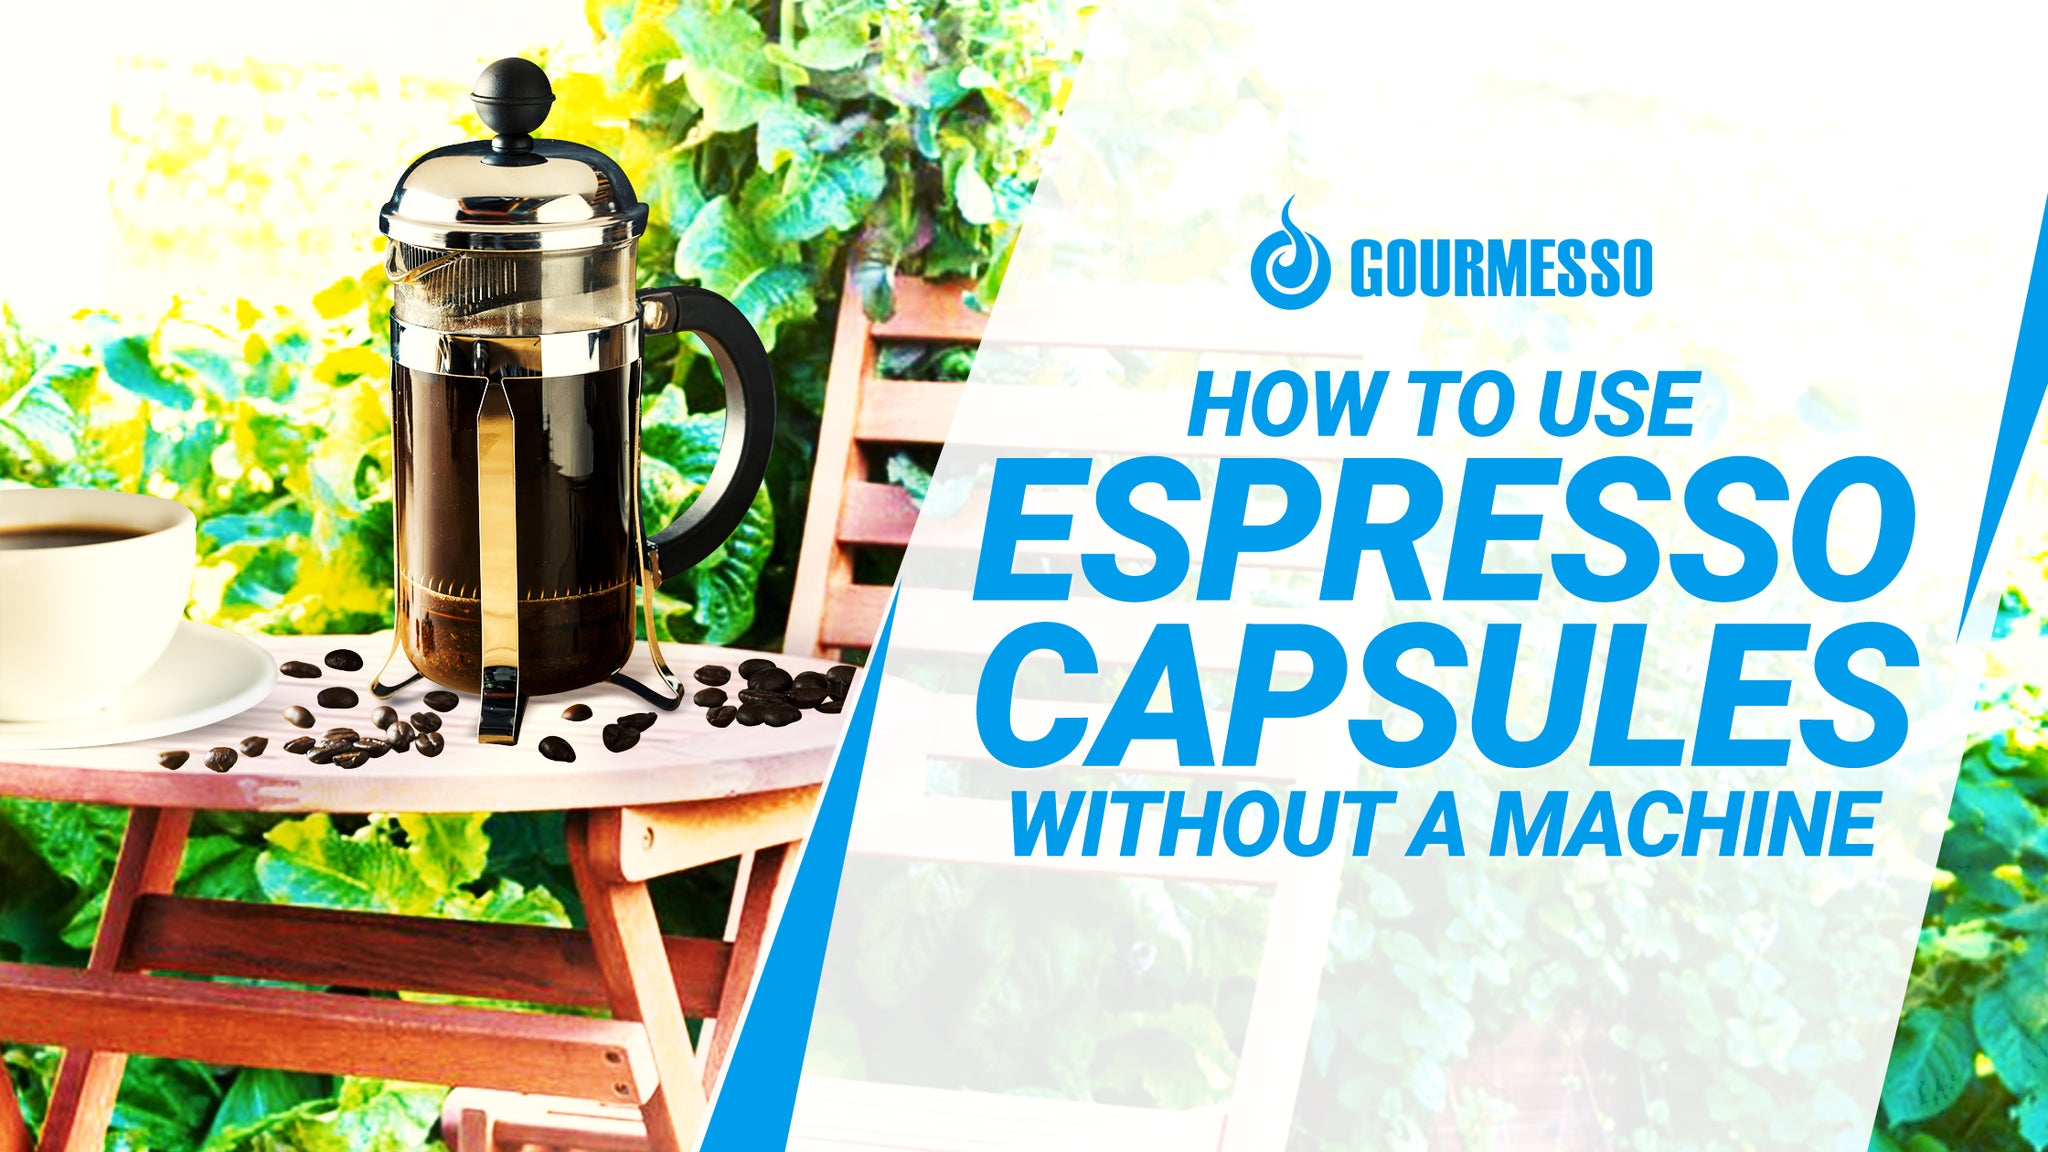 How To Make Tea Using An Espresso Machine